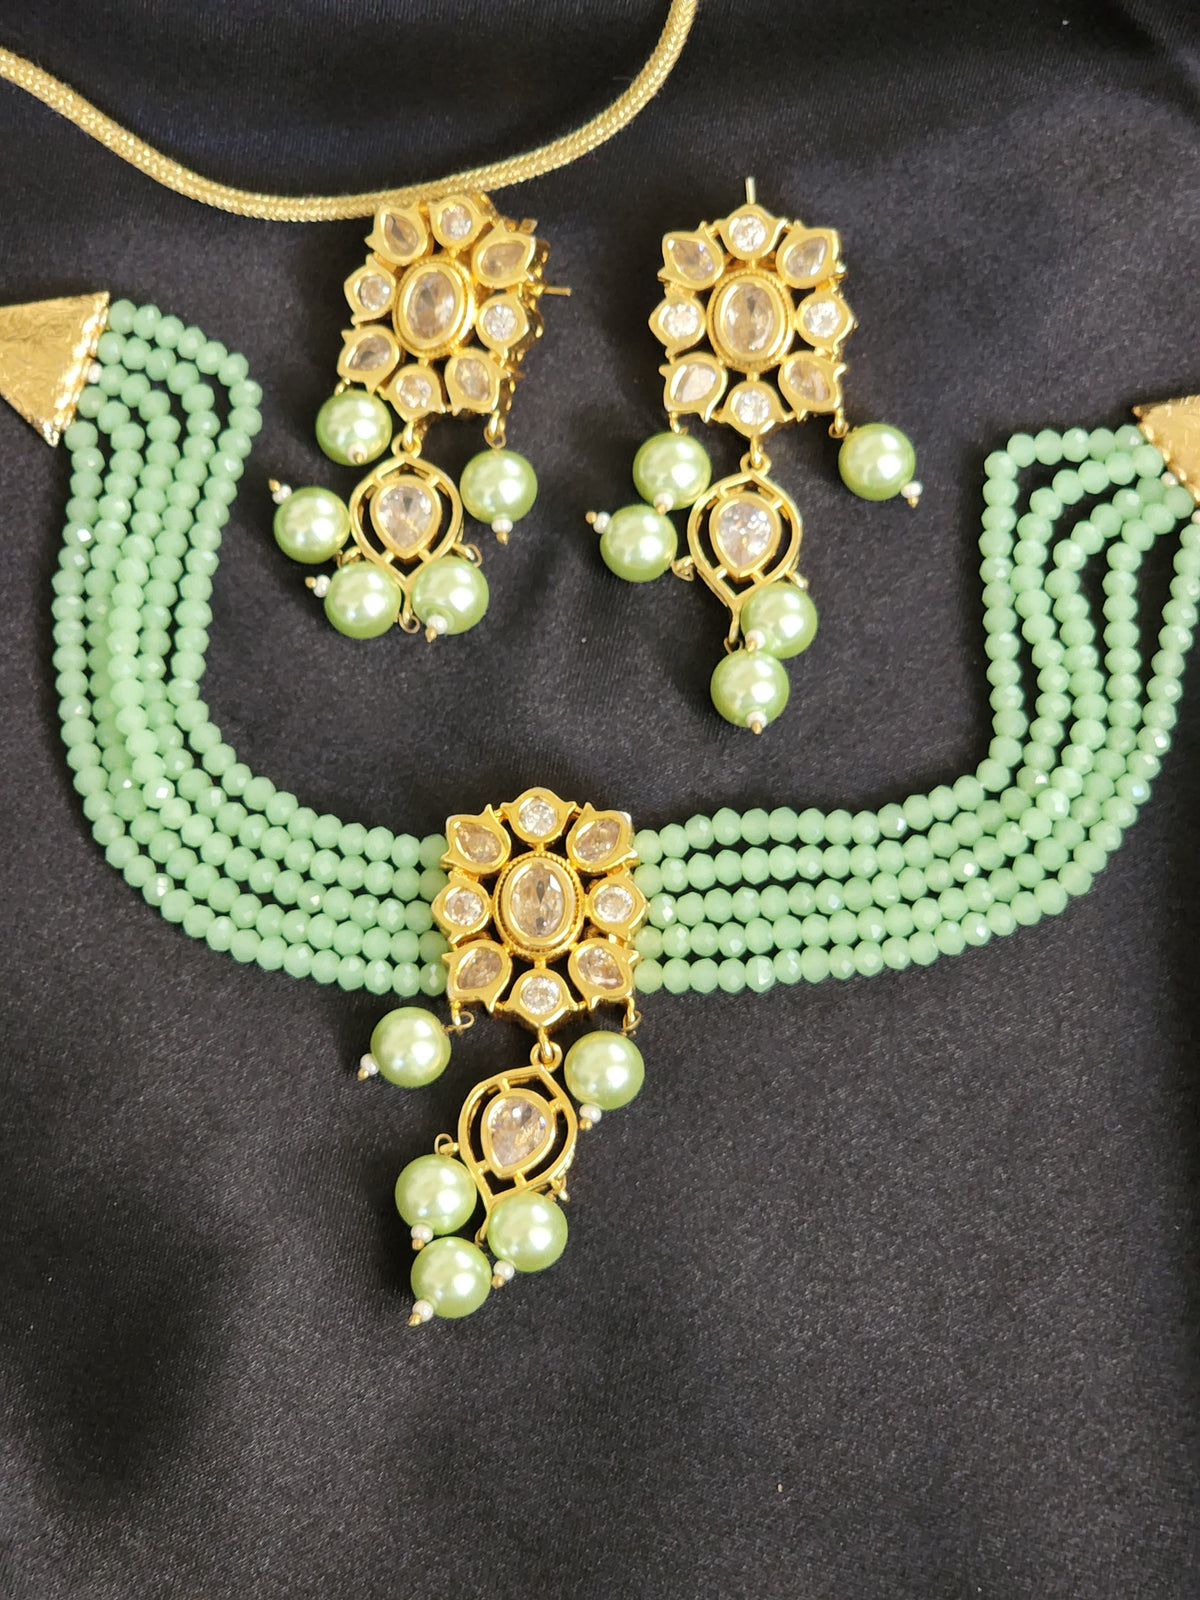 Chokar kundan set with earrings